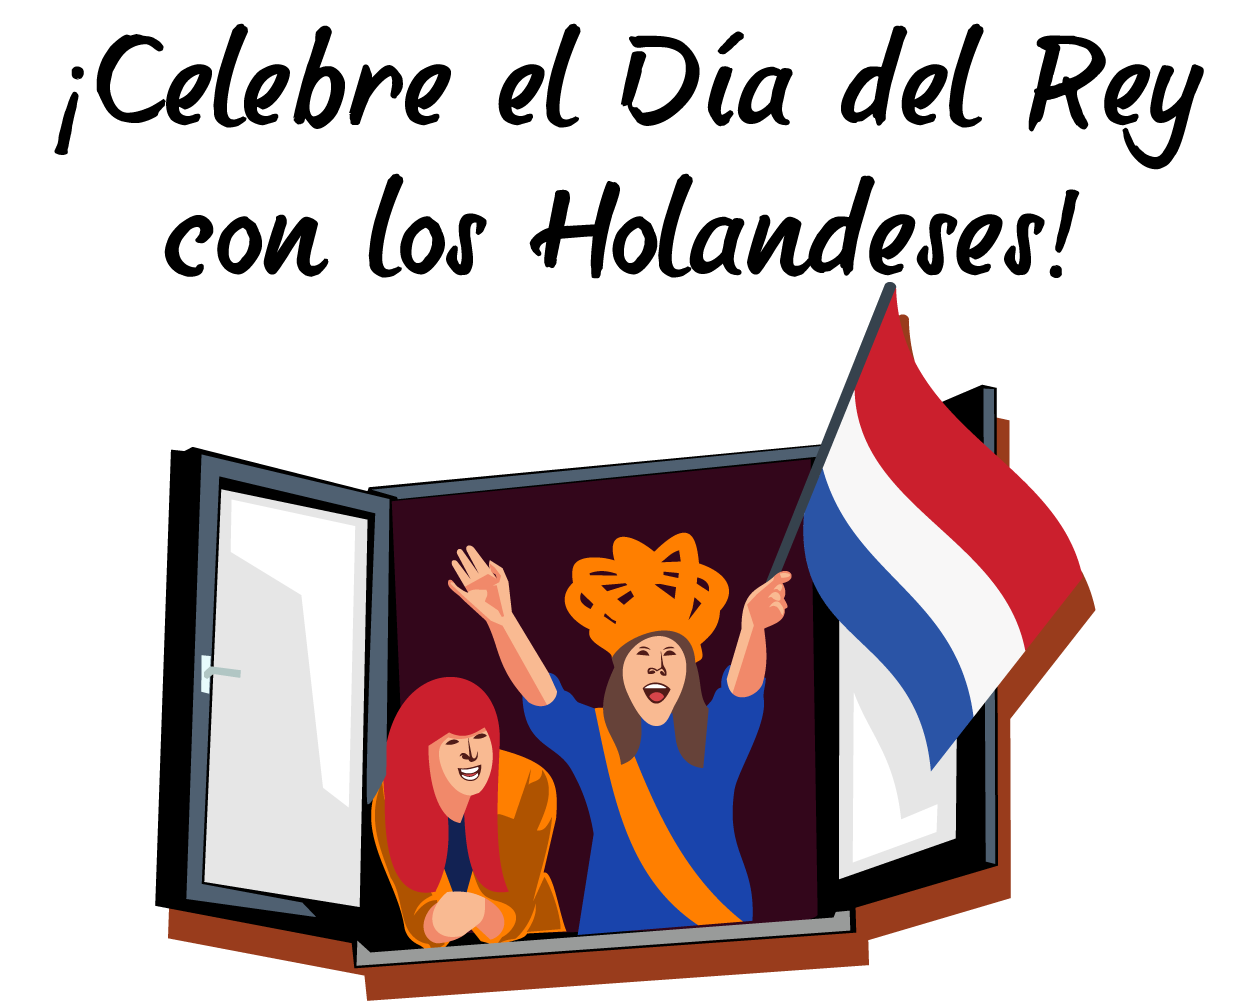 Oferta del Día de Reyes holandés: 25% de descuento en todos los productos de Usenet